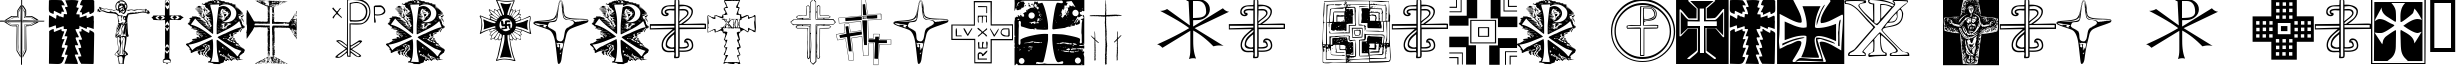 Пример написания шрифтом Christian Crosses II текста на французском